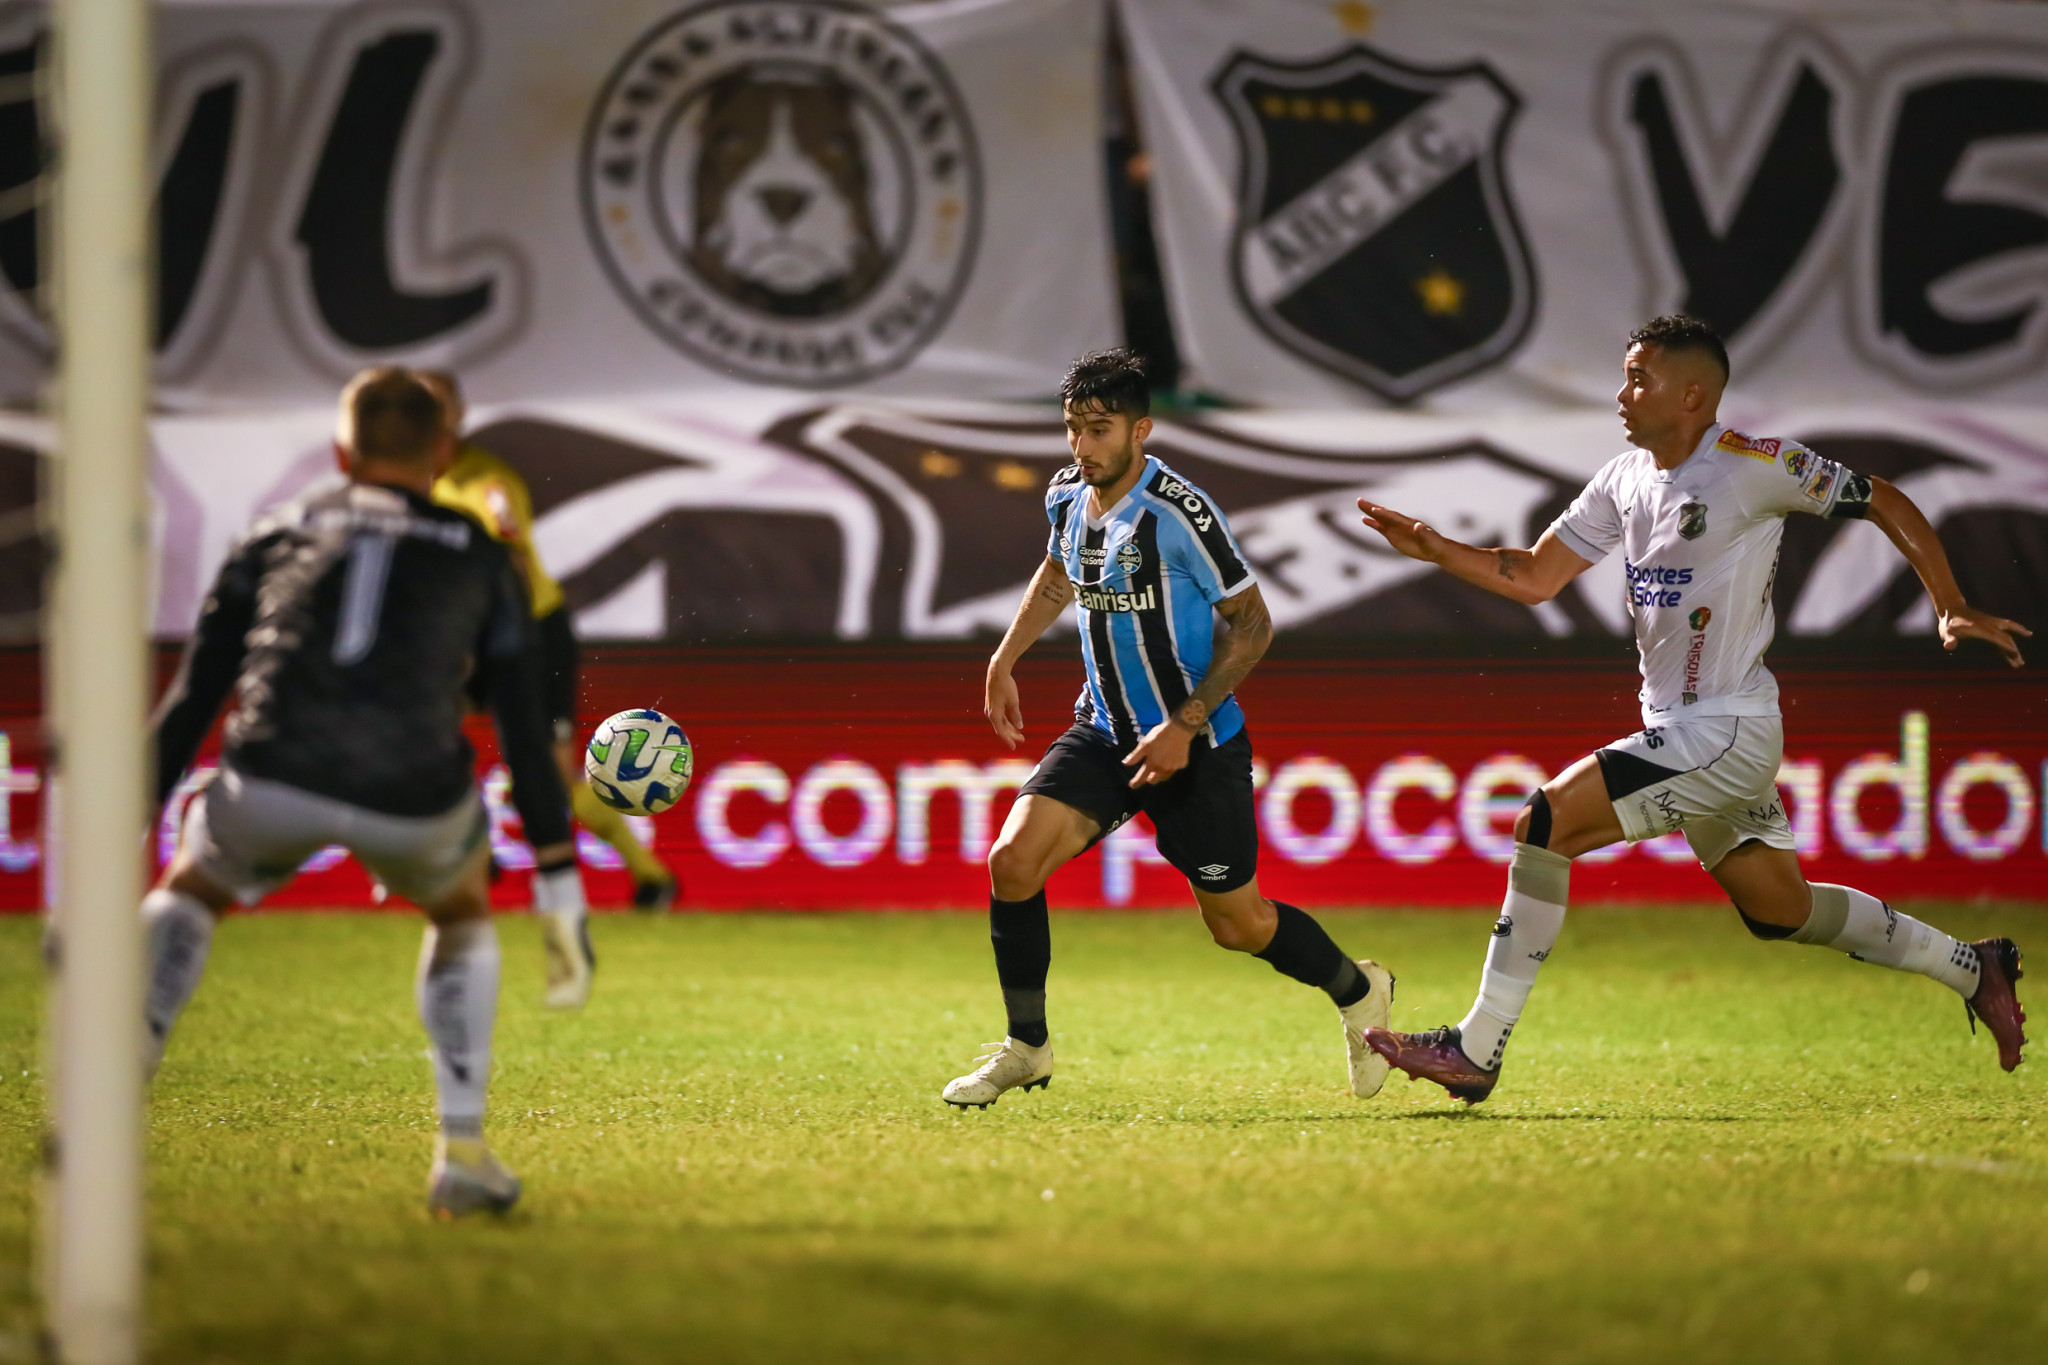 Ceará SC vs. Tombense: A Clash of Titans